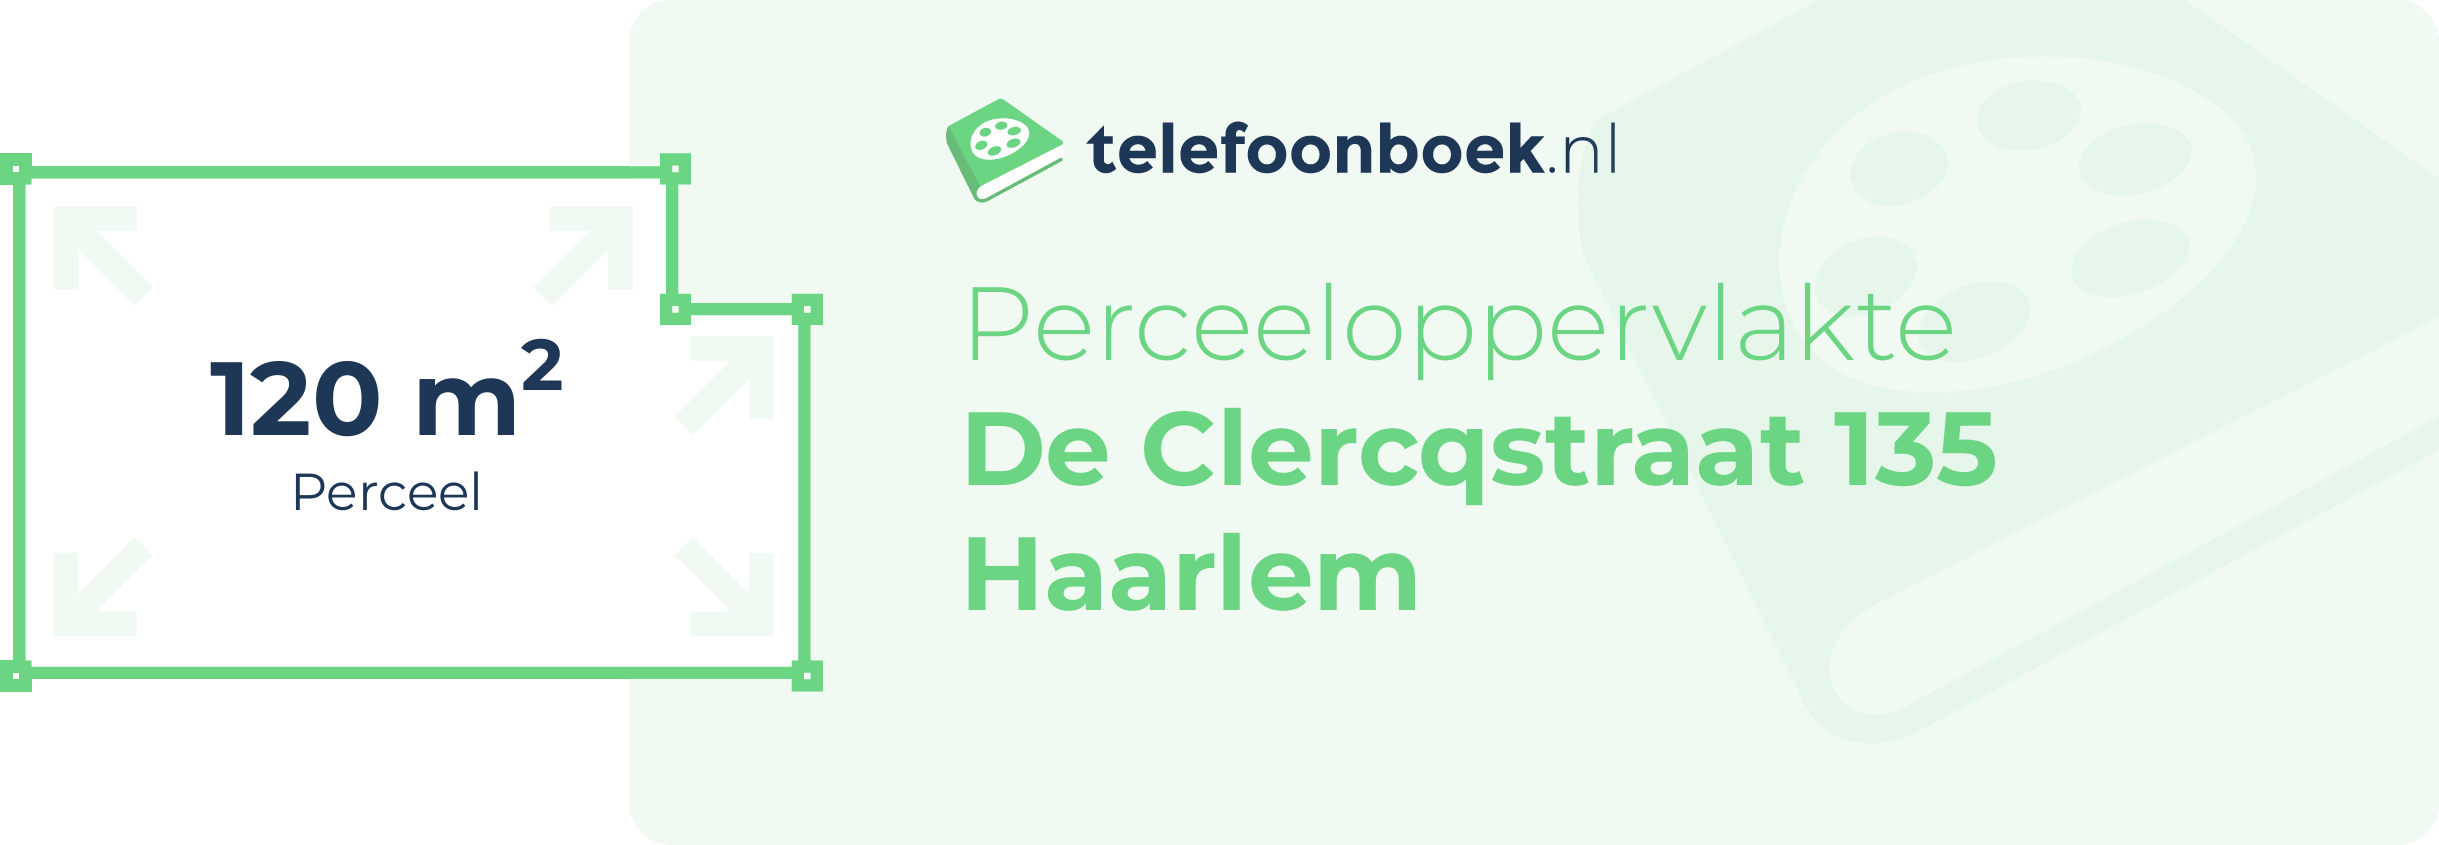 Perceeloppervlakte De Clercqstraat 135 Haarlem